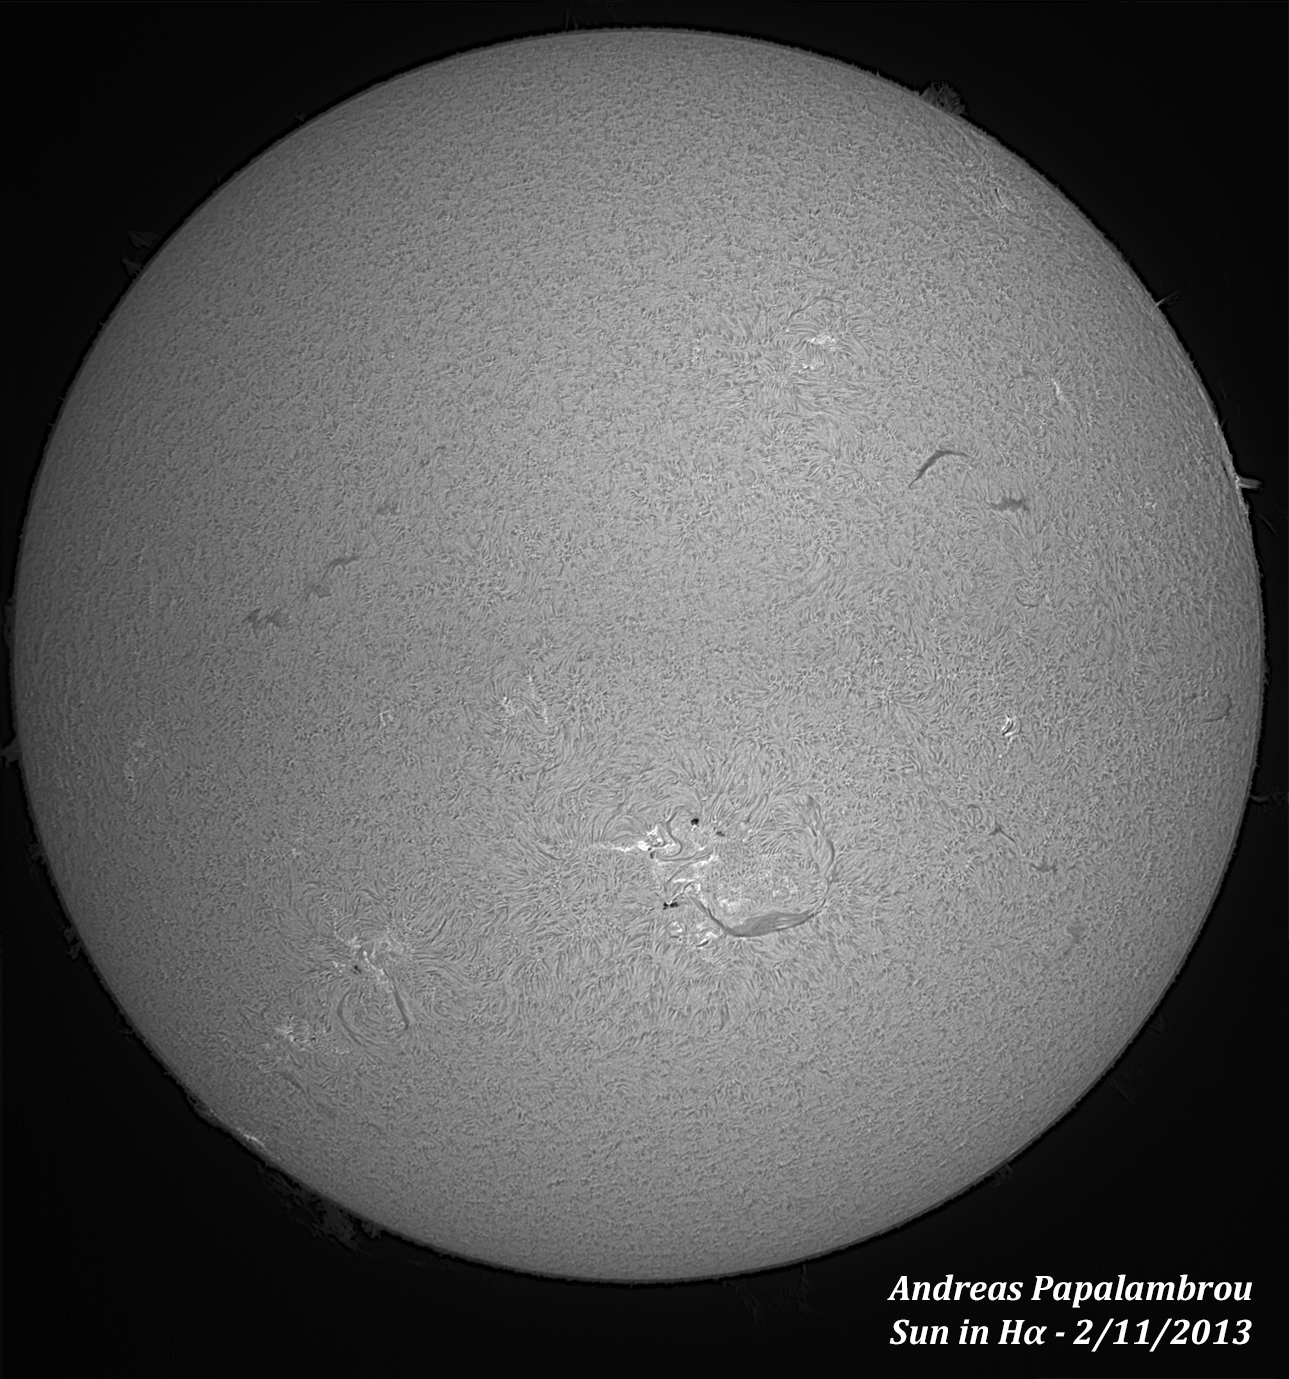 Ηλιακό πανόραμα στο Hα 2/11/2013 (δοκιμές πριν την έκλειψη)